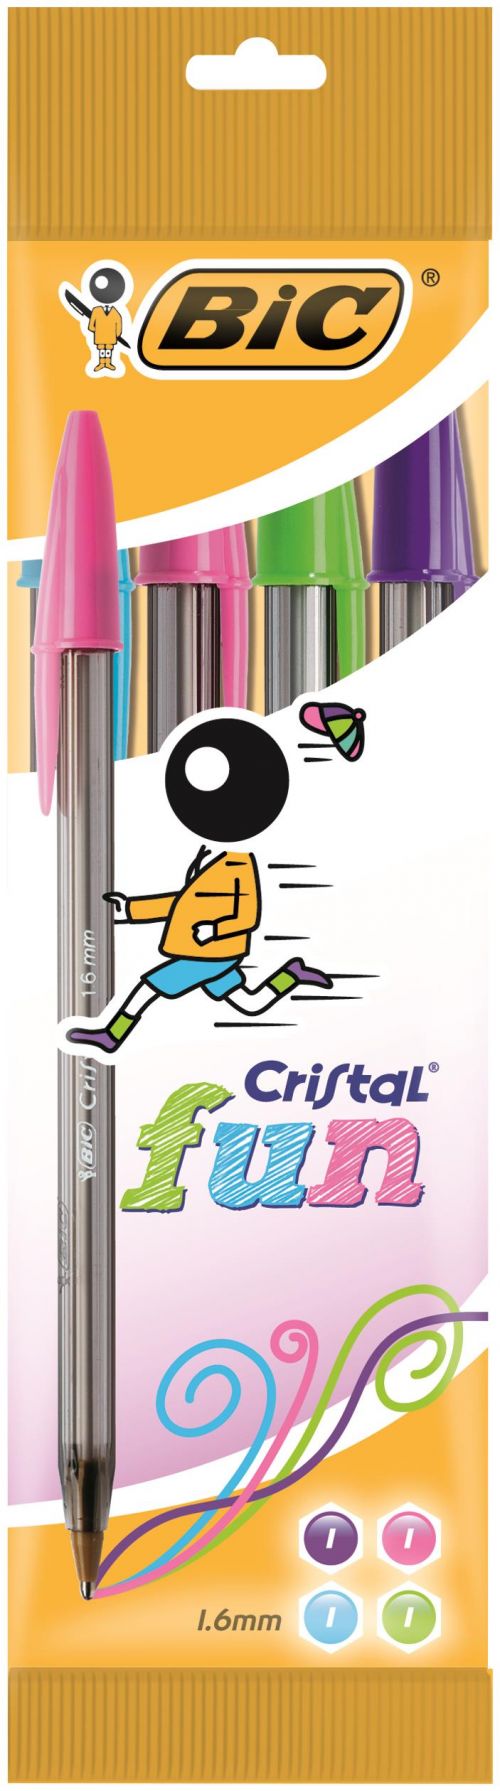 Bic+Cristal+FUN+Assorted+1.6mm+Ballpoint+Pen+%28Pack+4%29+8957921